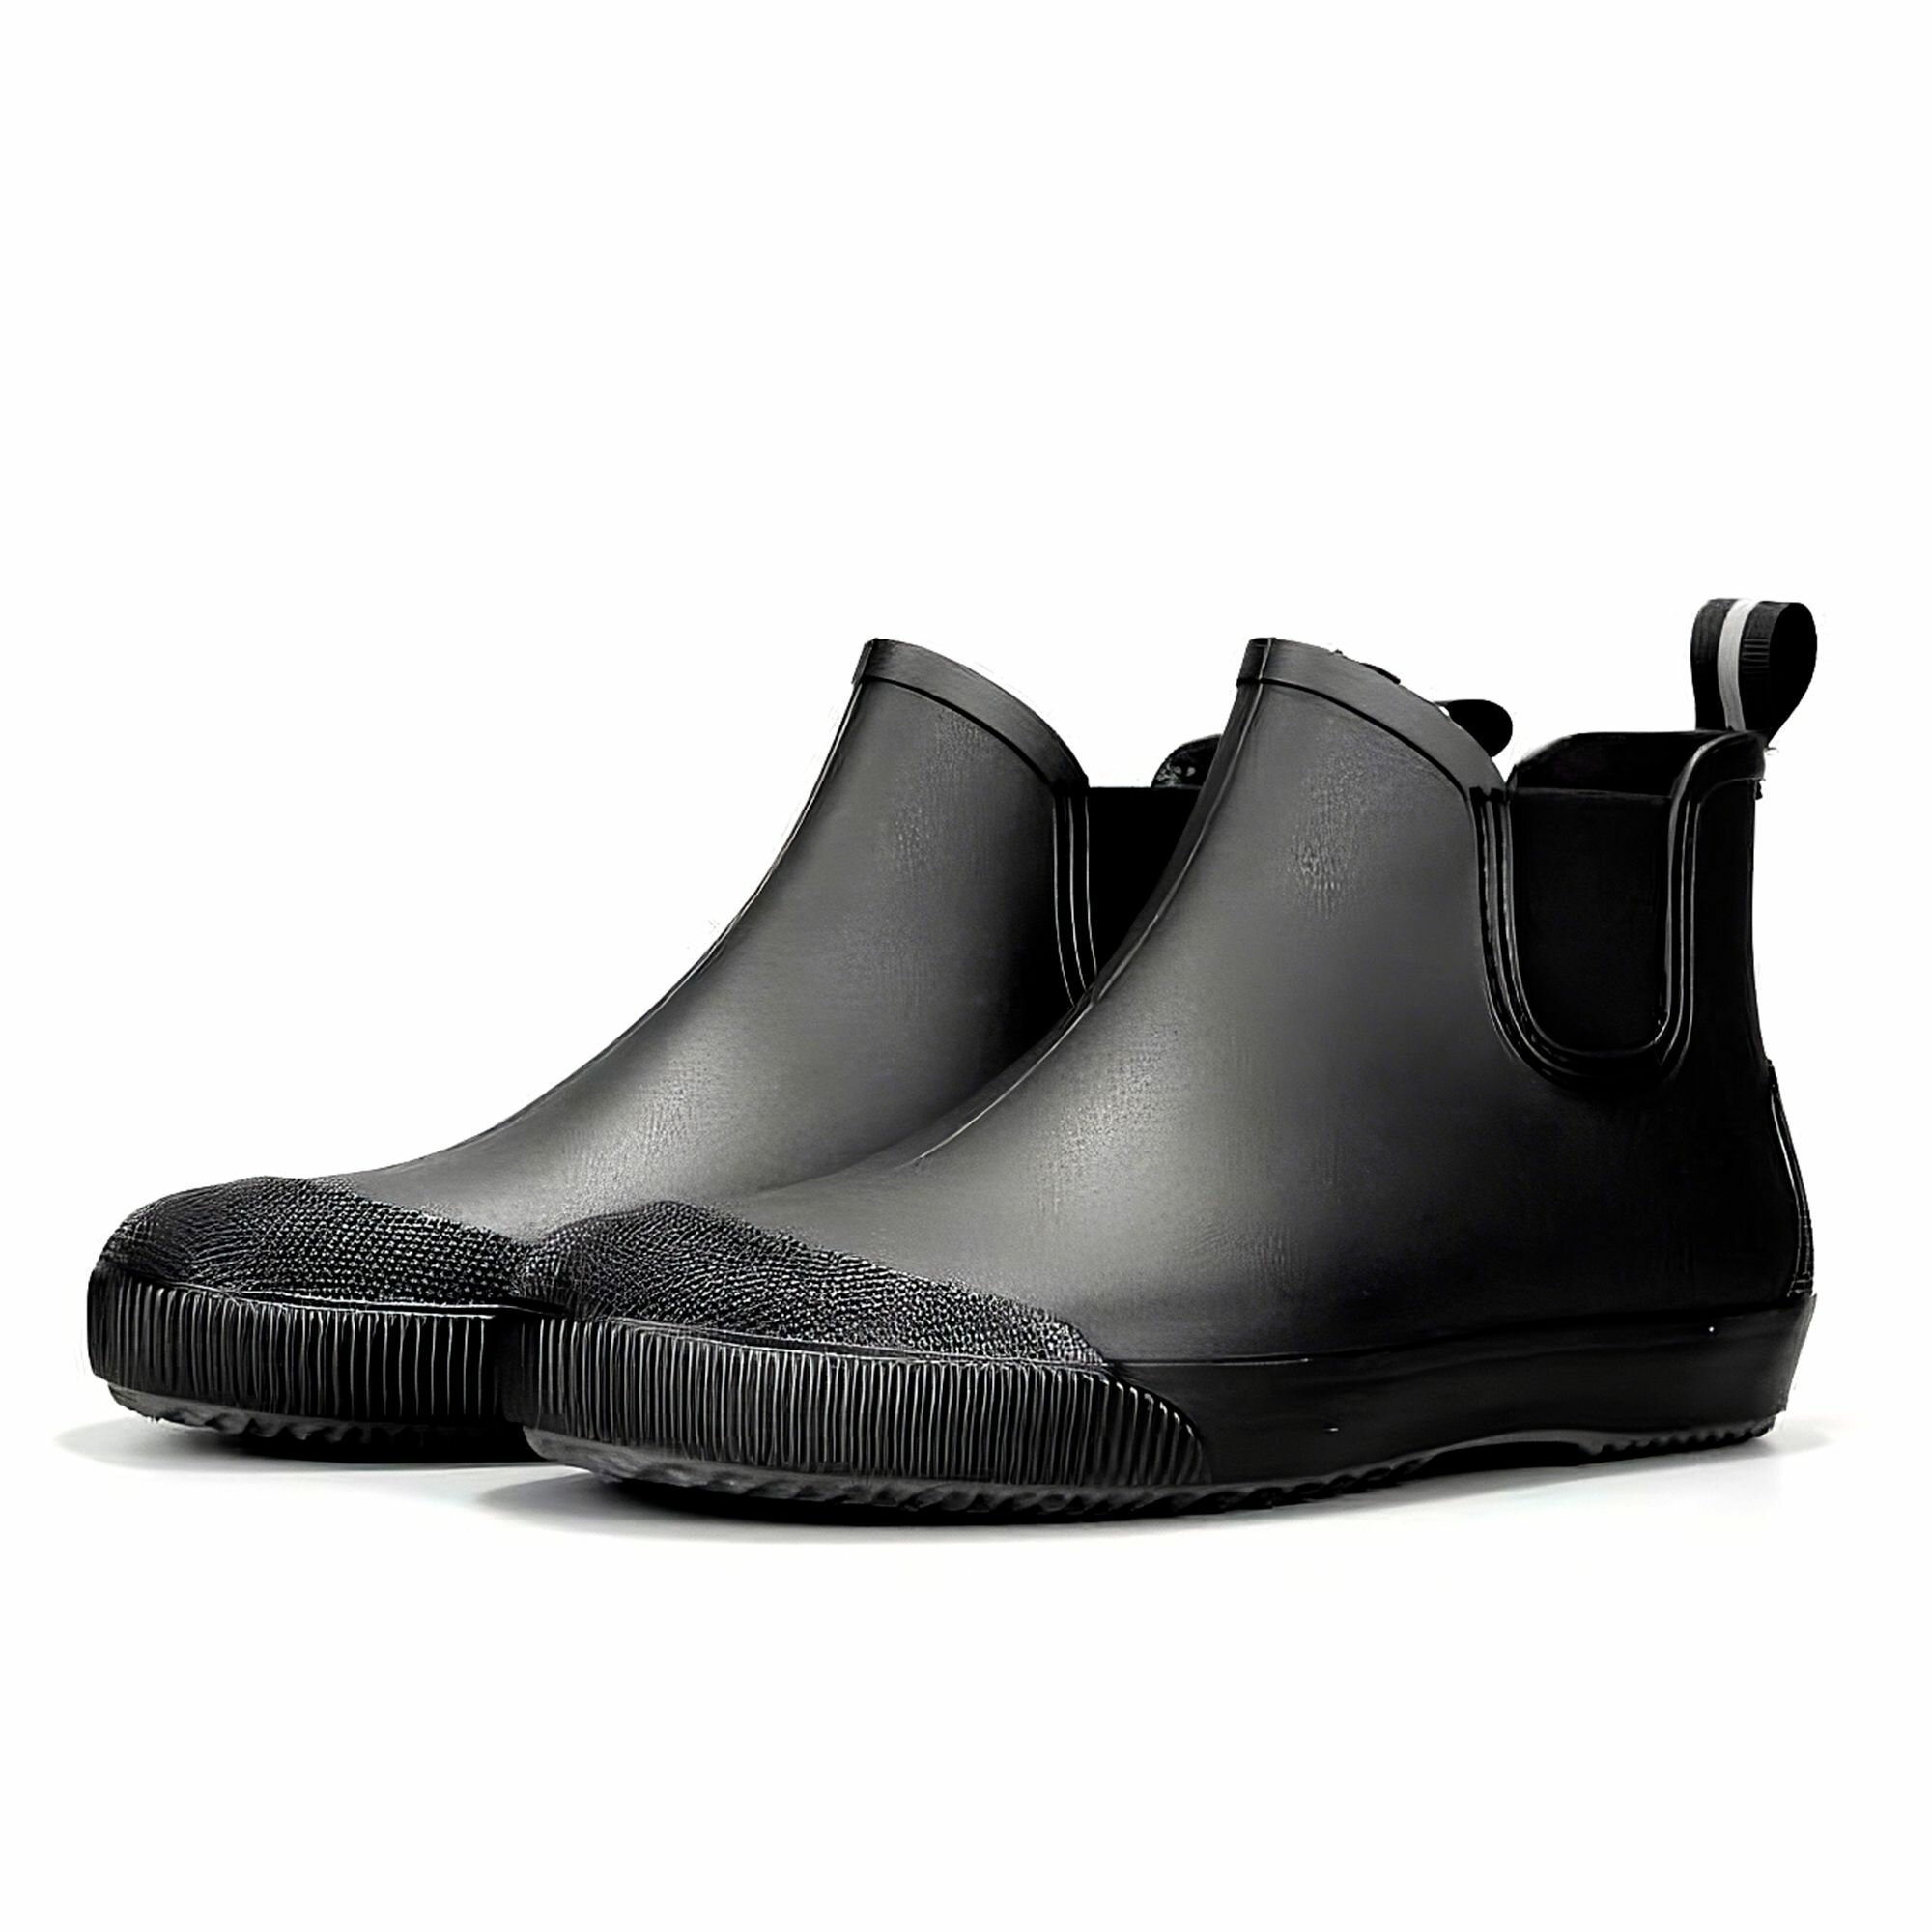 Ботинки мужские из ПВХ Nordman Beat / ПС-30 / цвет: Черный/серый